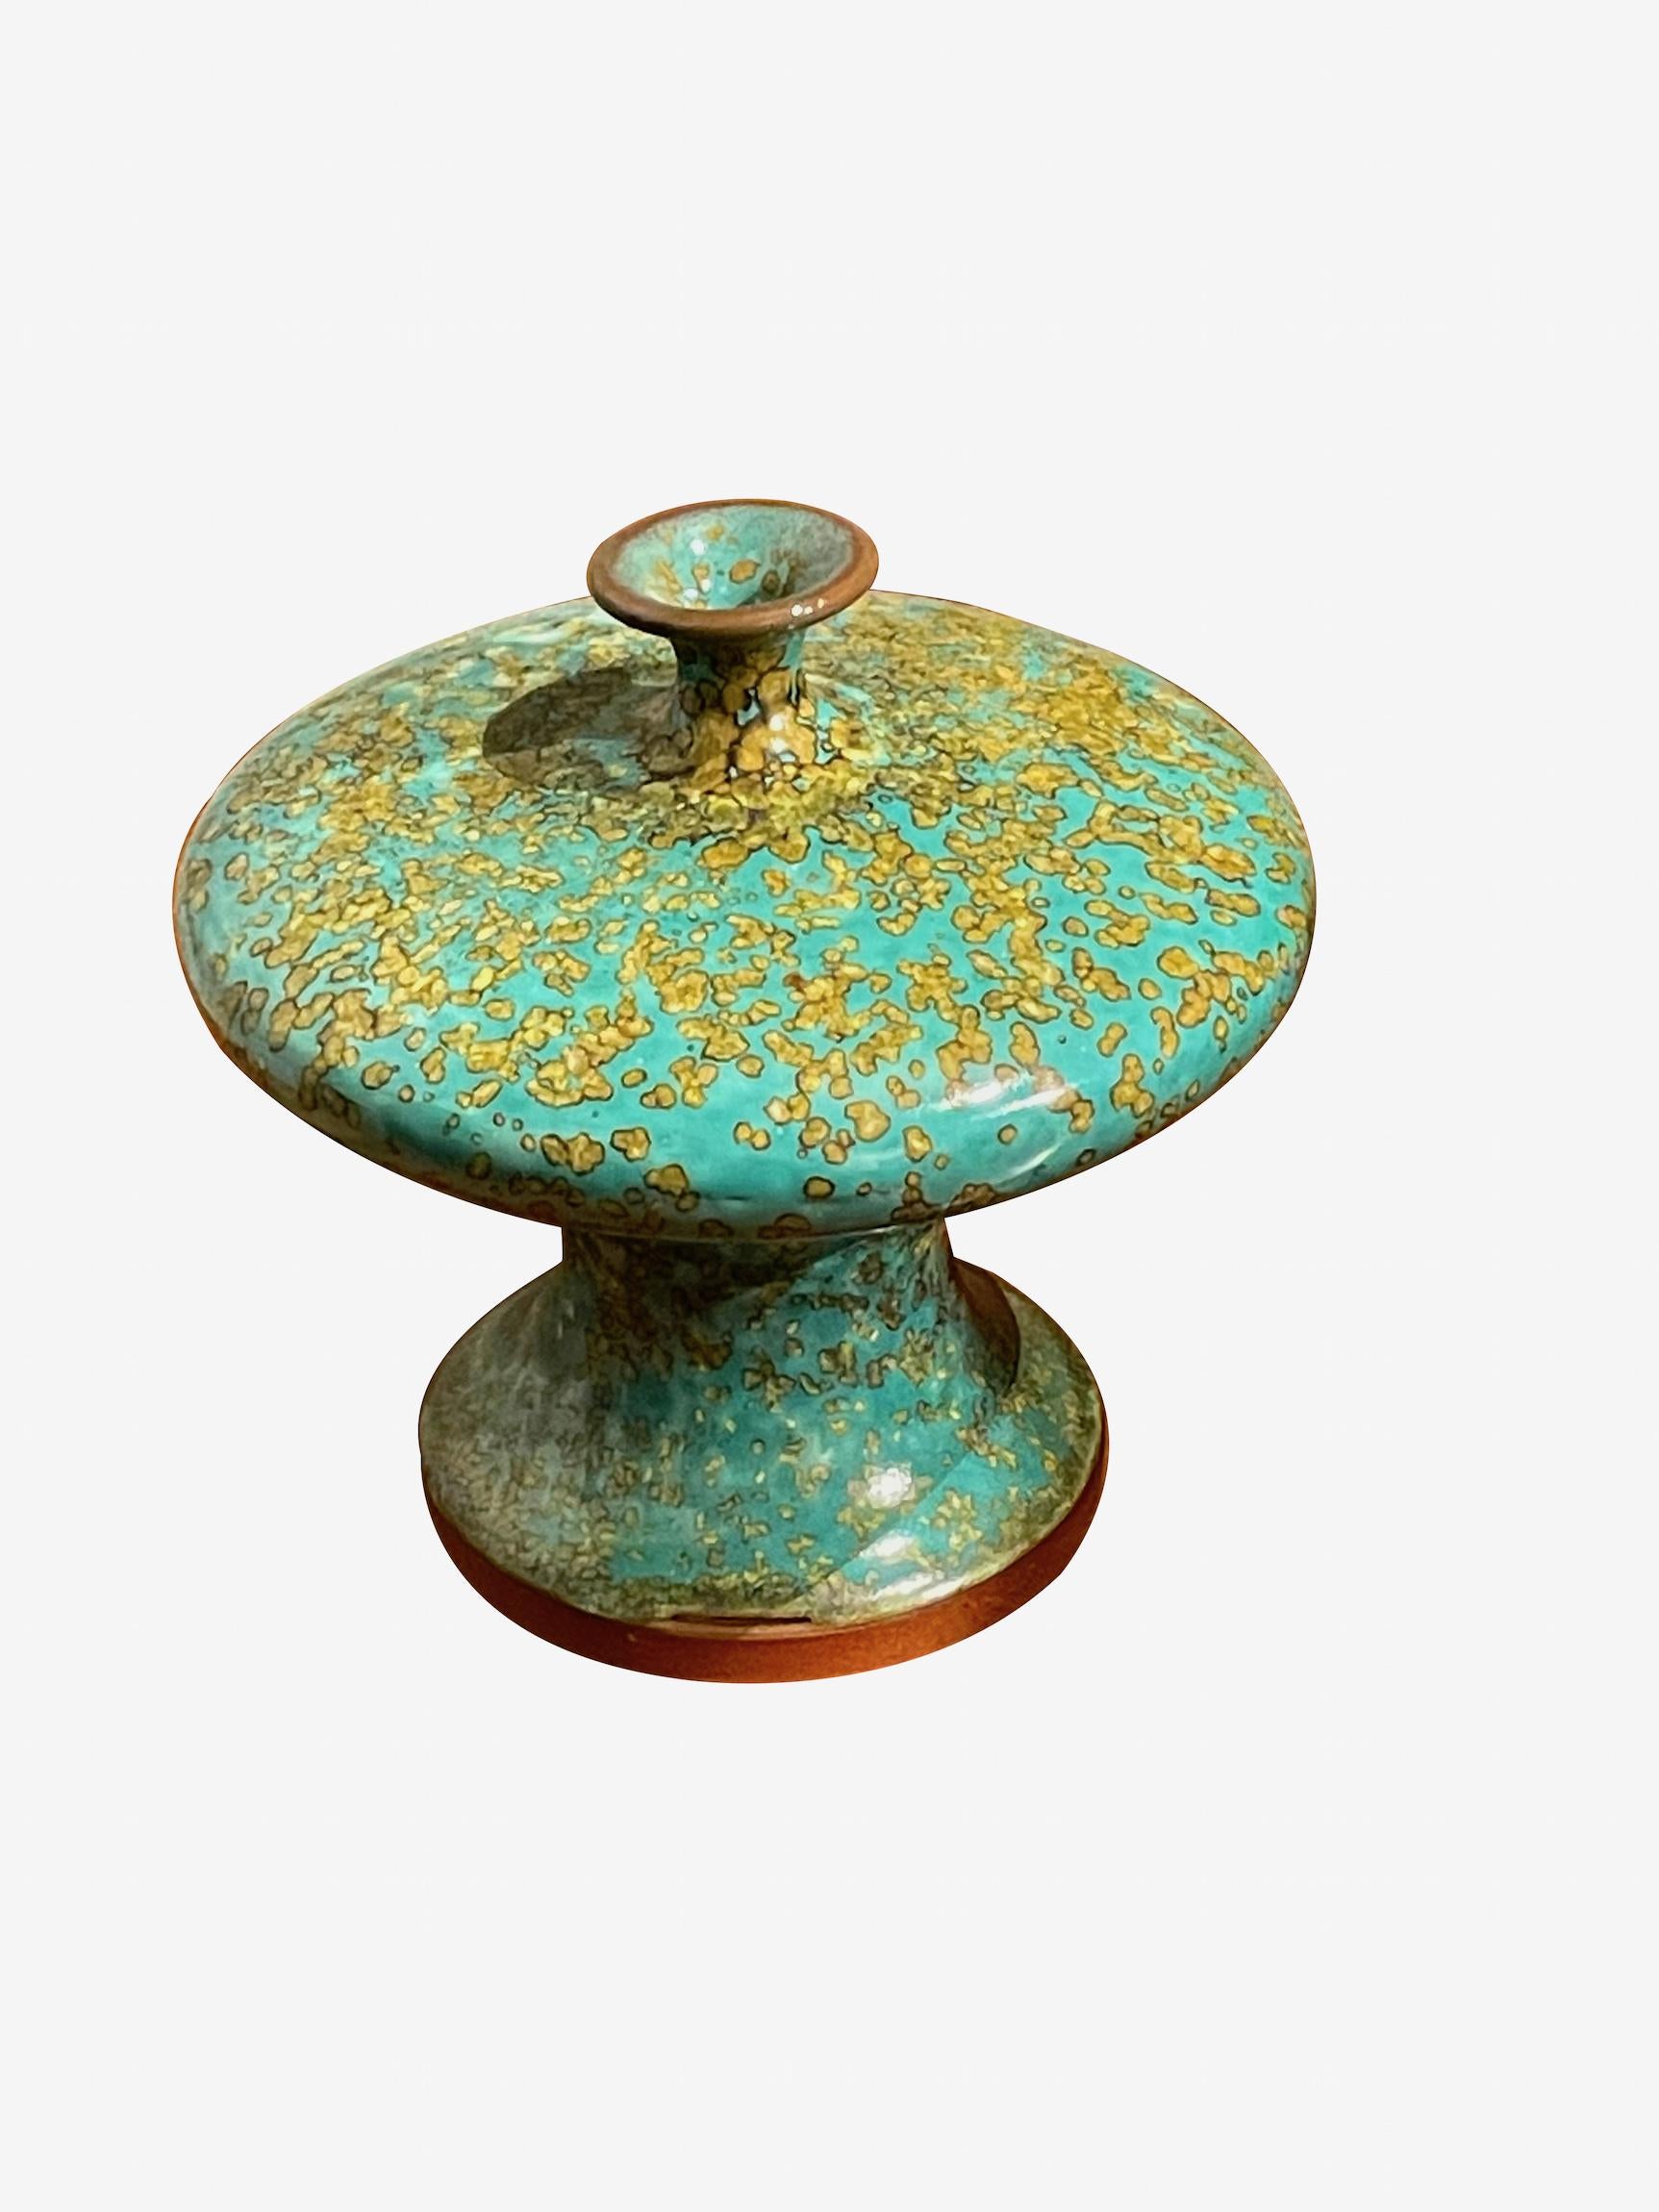 Vase contemporain chinois à glaçure turquoise et mouchetée d'or.
Dessus en forme de soucoupe avec petit bec.
Une pièce parmi d'autres d'une grande collection.